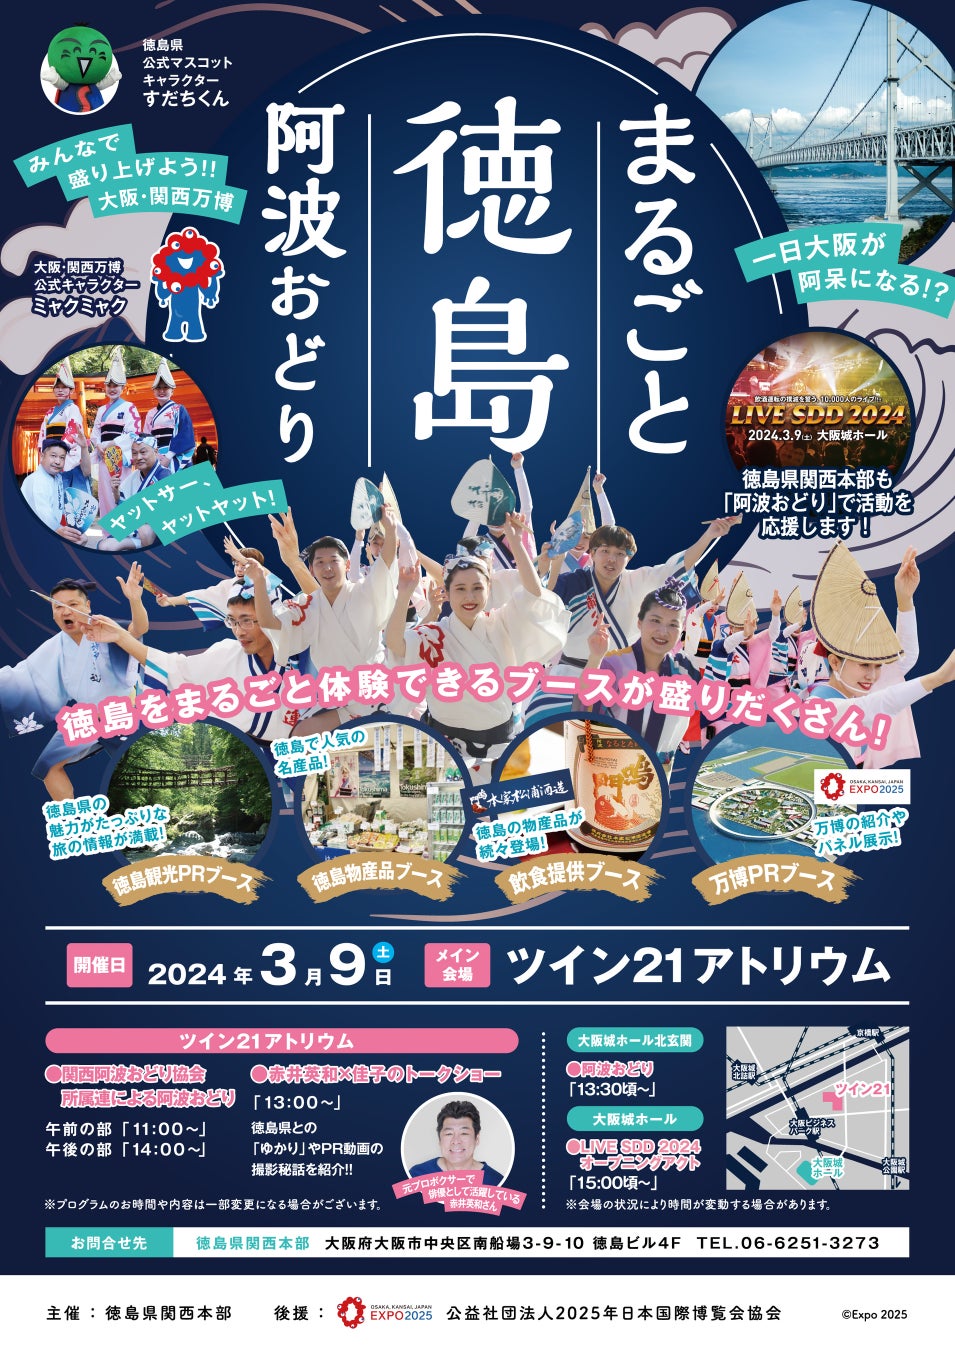 ライブイベント『MAKE A BOOM #6 -sparkle-』開催記念！出演する秋山黄色、須田景凪、Novel Core & THE WILL RABBITSの楽曲をオンエアするラウンジを開催！